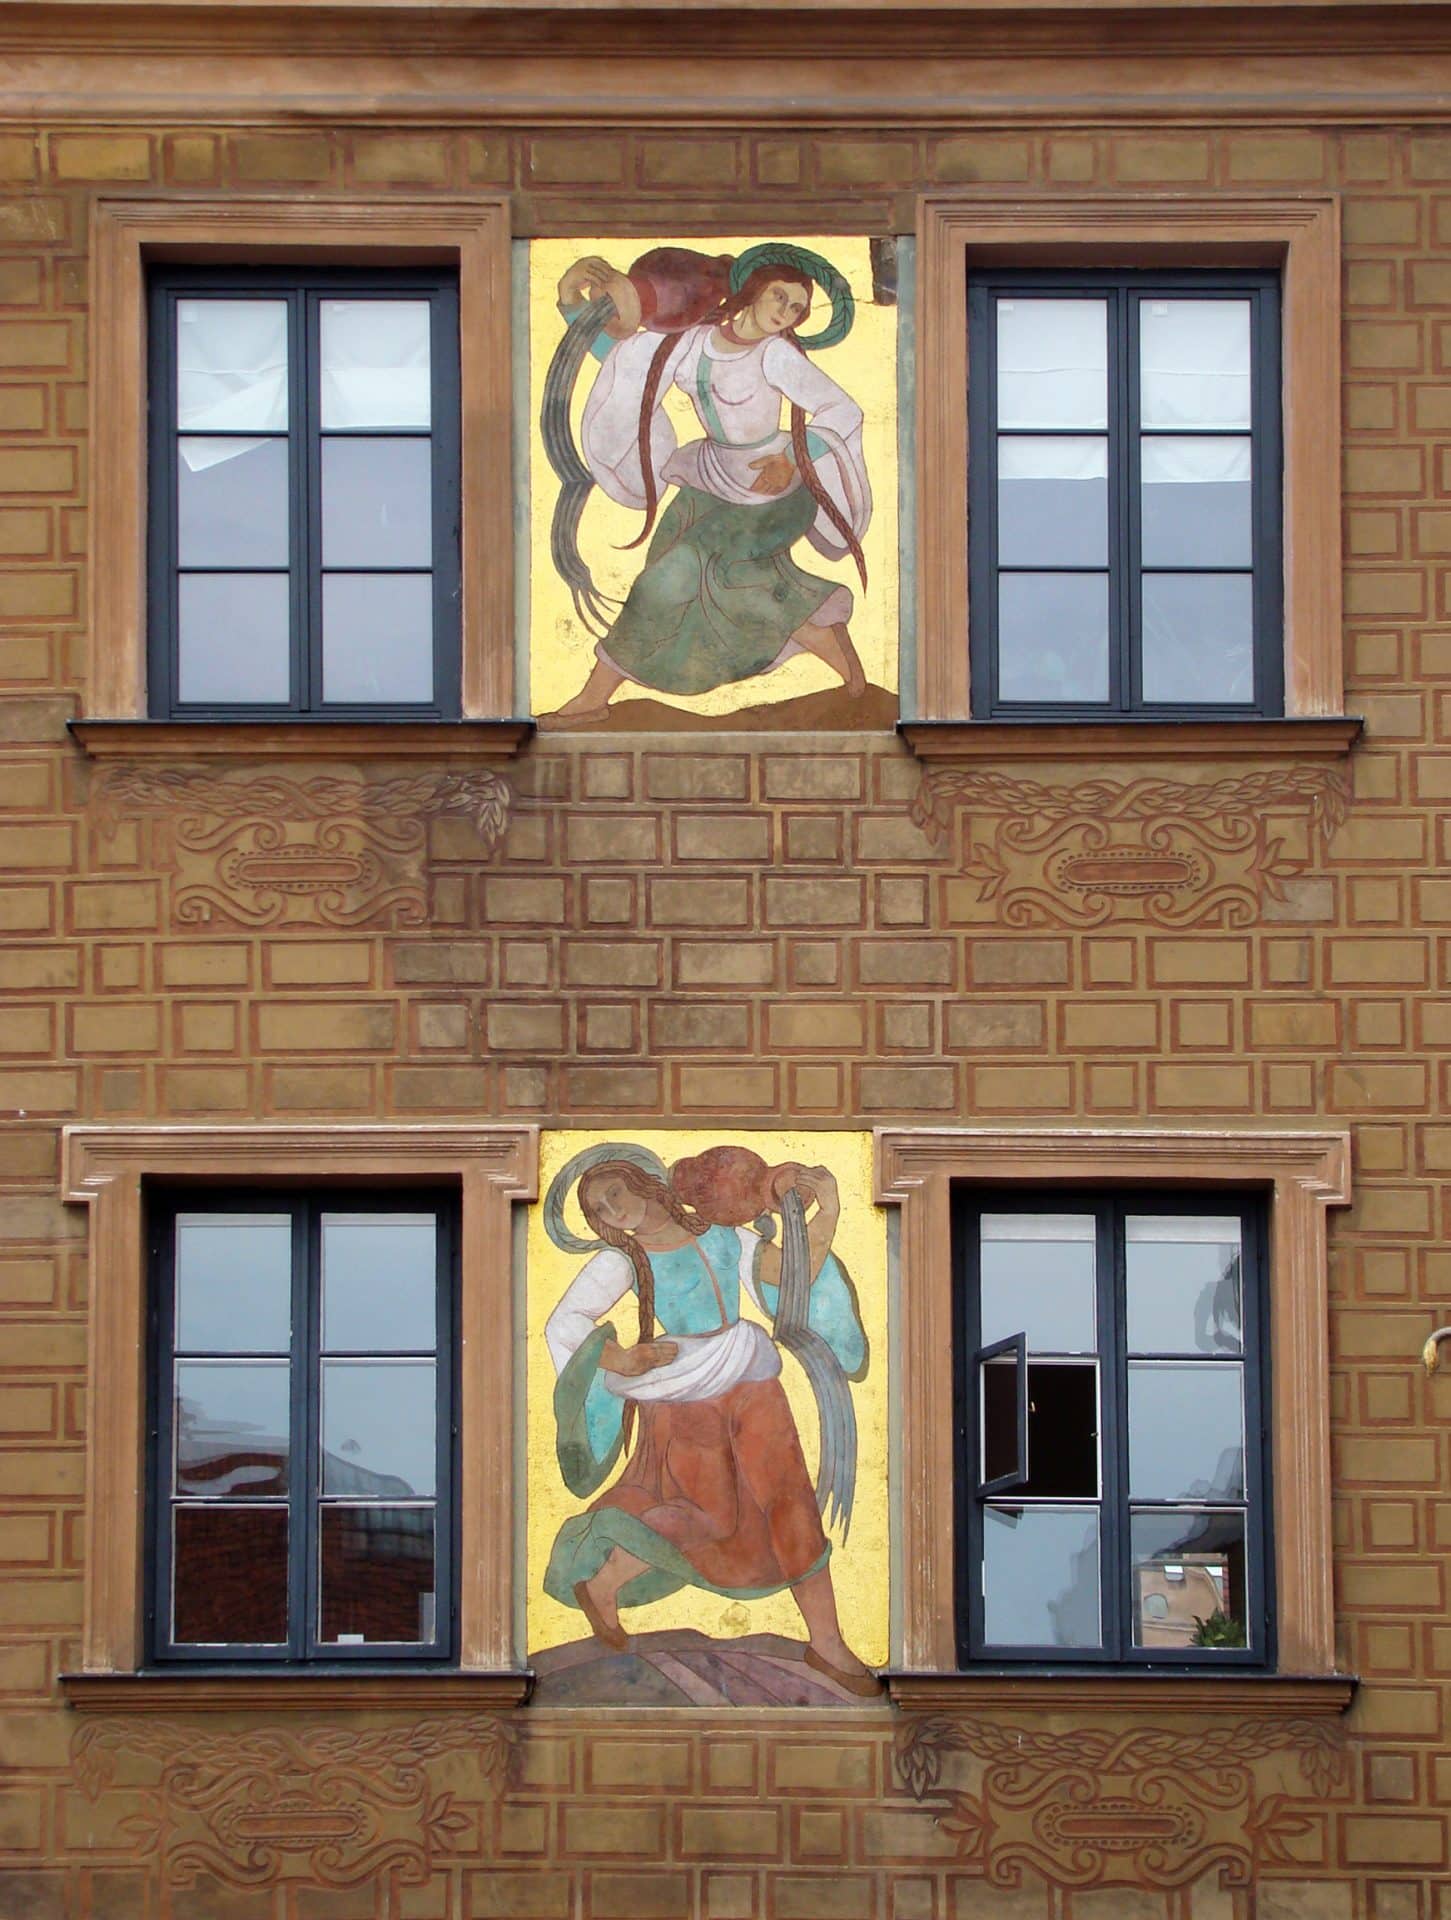 Polichromie, ktorych autorką jest Zofia Stryjeńska z roku 1928 na Rynku Starego Miasta w Warszawie. Fot. Szczebrzeszynski, Public domain, via Wikimedia Commons